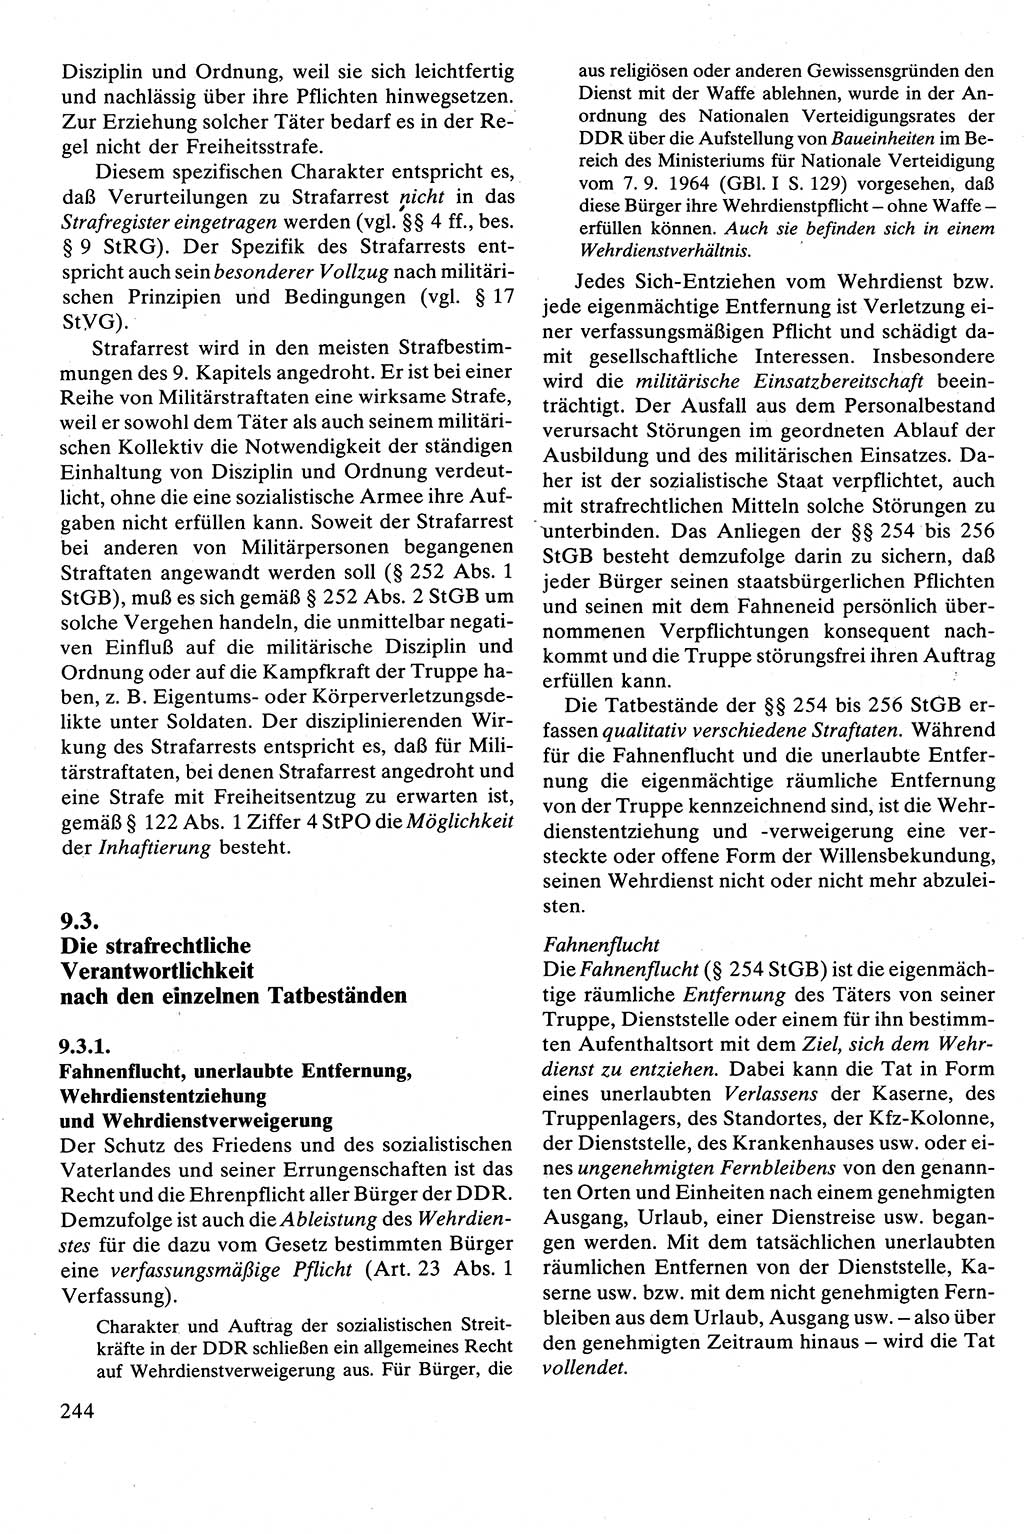 Strafrecht [Deutsche Demokratische Republik (DDR)], Besonderer Teil, Lehrbuch 1981, Seite 244 (Strafr. DDR BT Lb. 1981, S. 244)